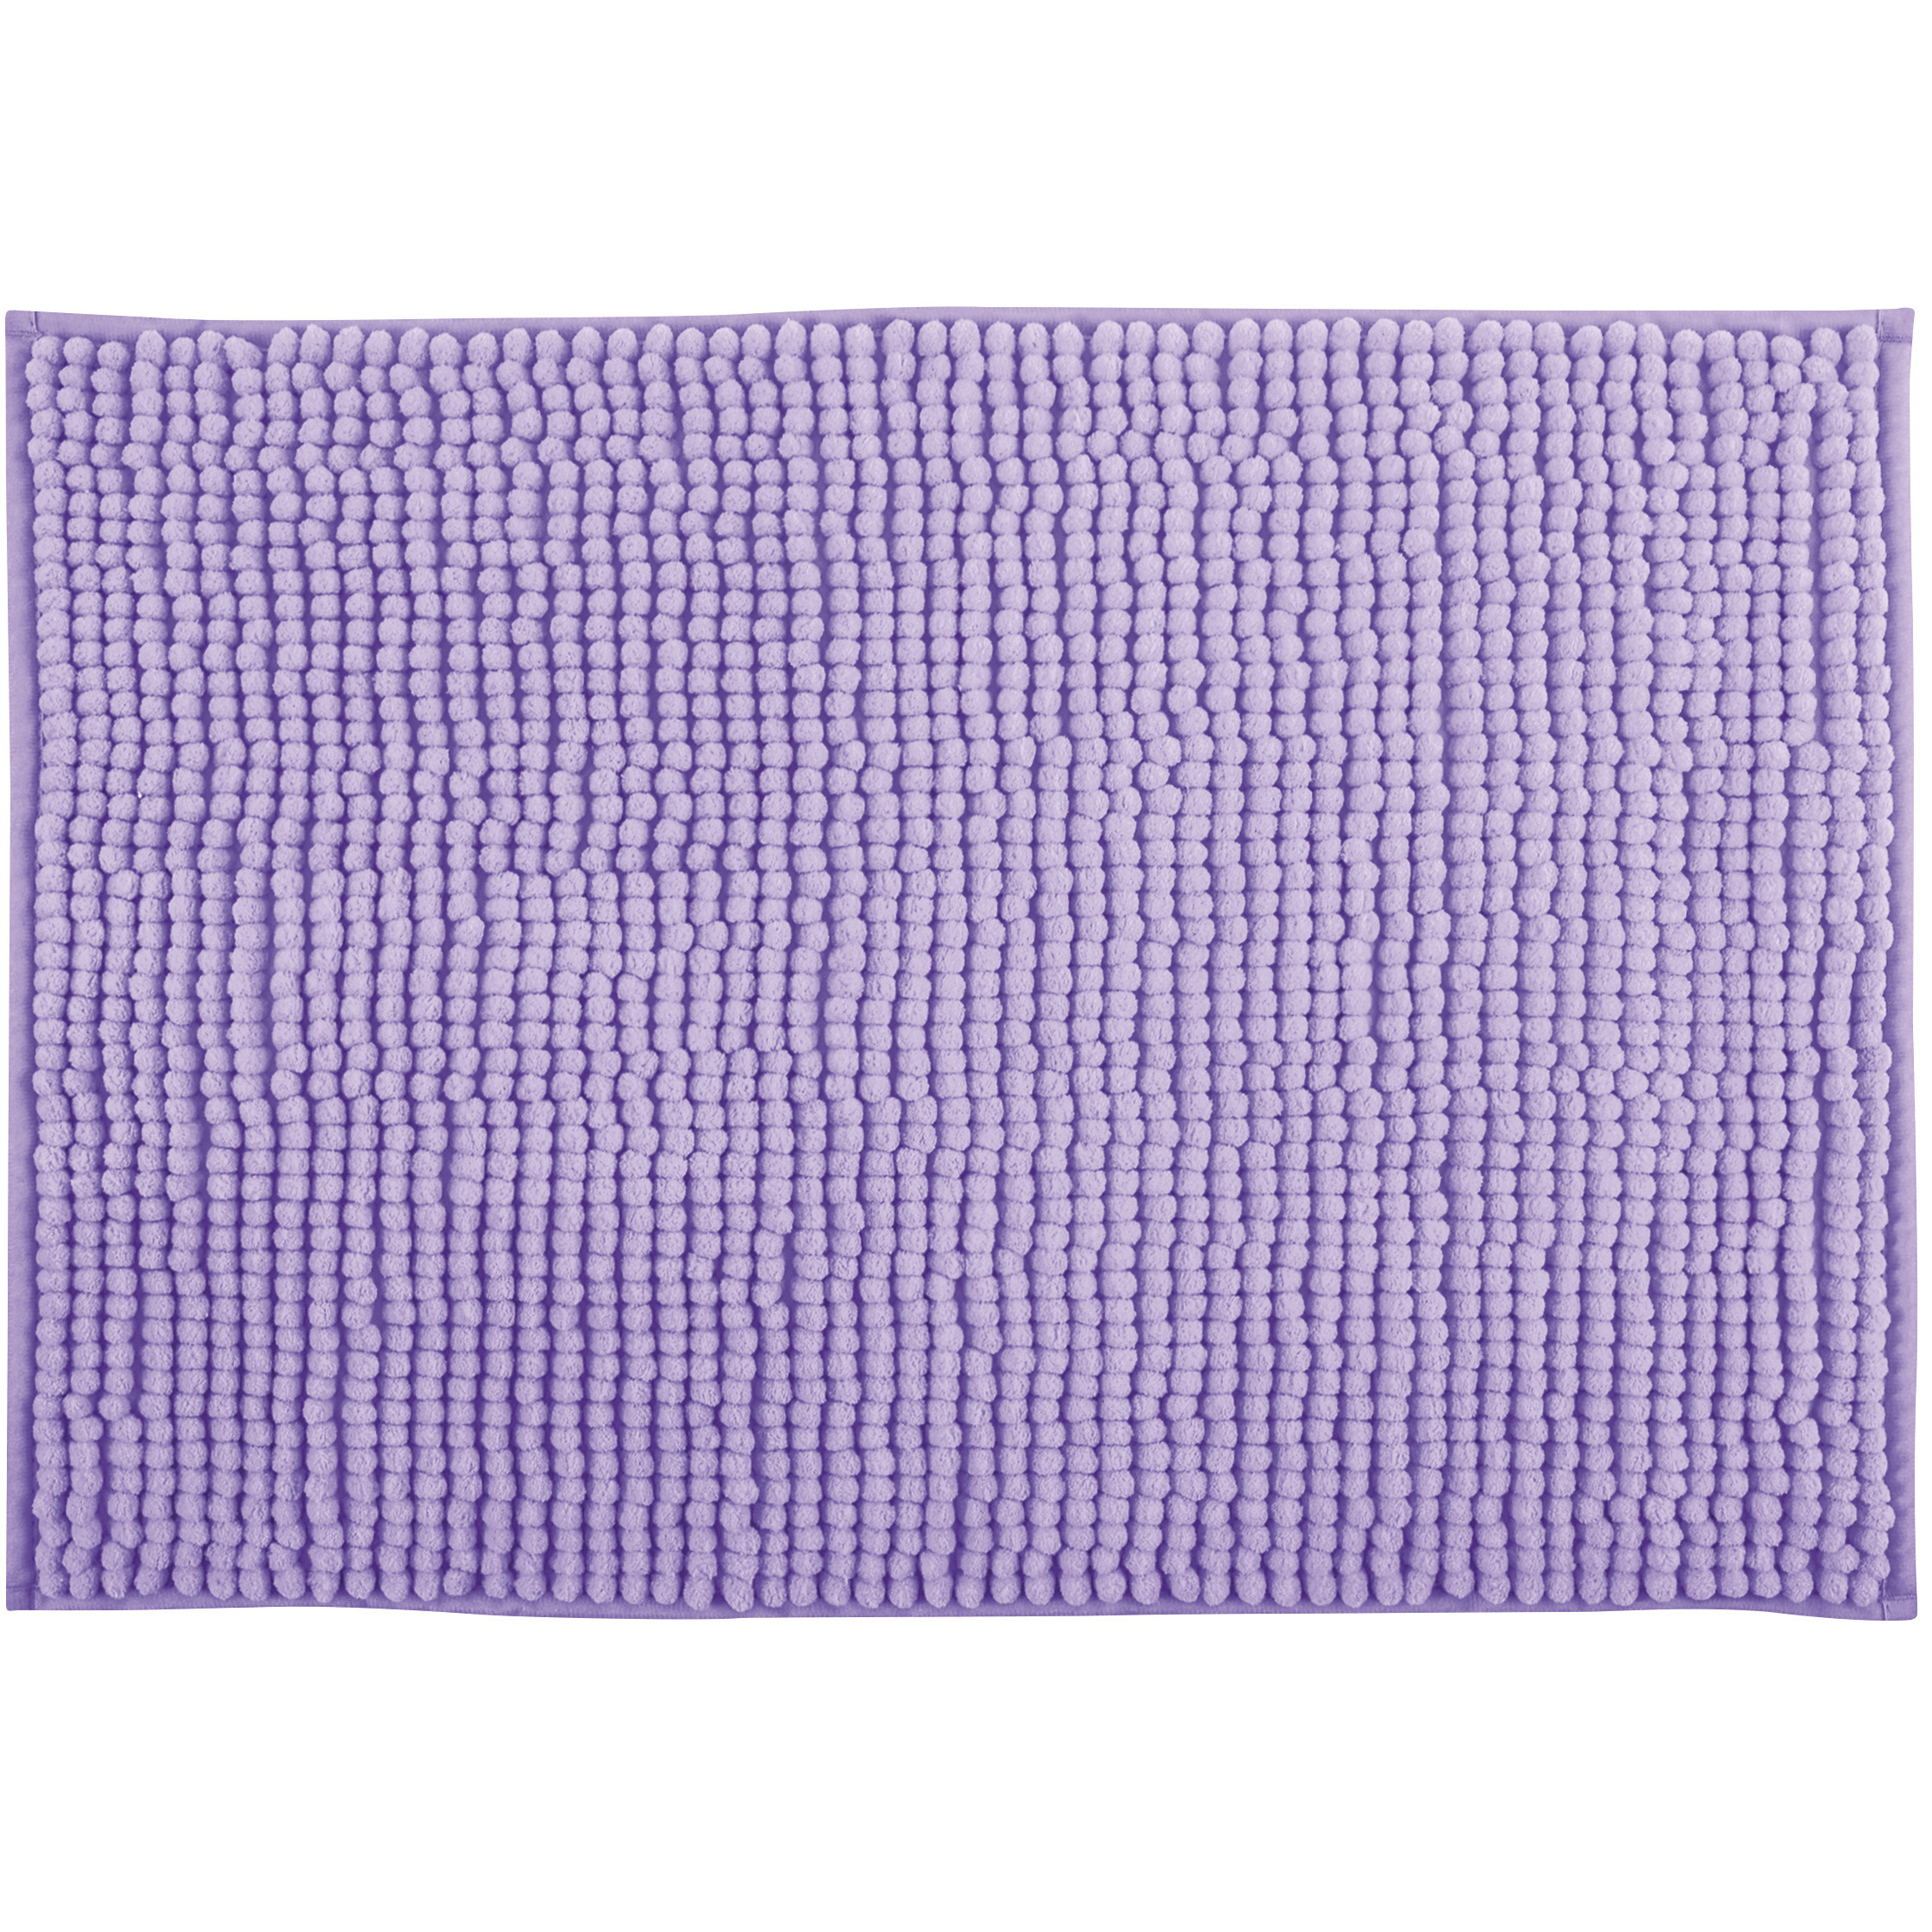 MSV Badkamerkleed-badmat tapijtje voor op de vloer lila paars 50 x 80 cm Microvezel